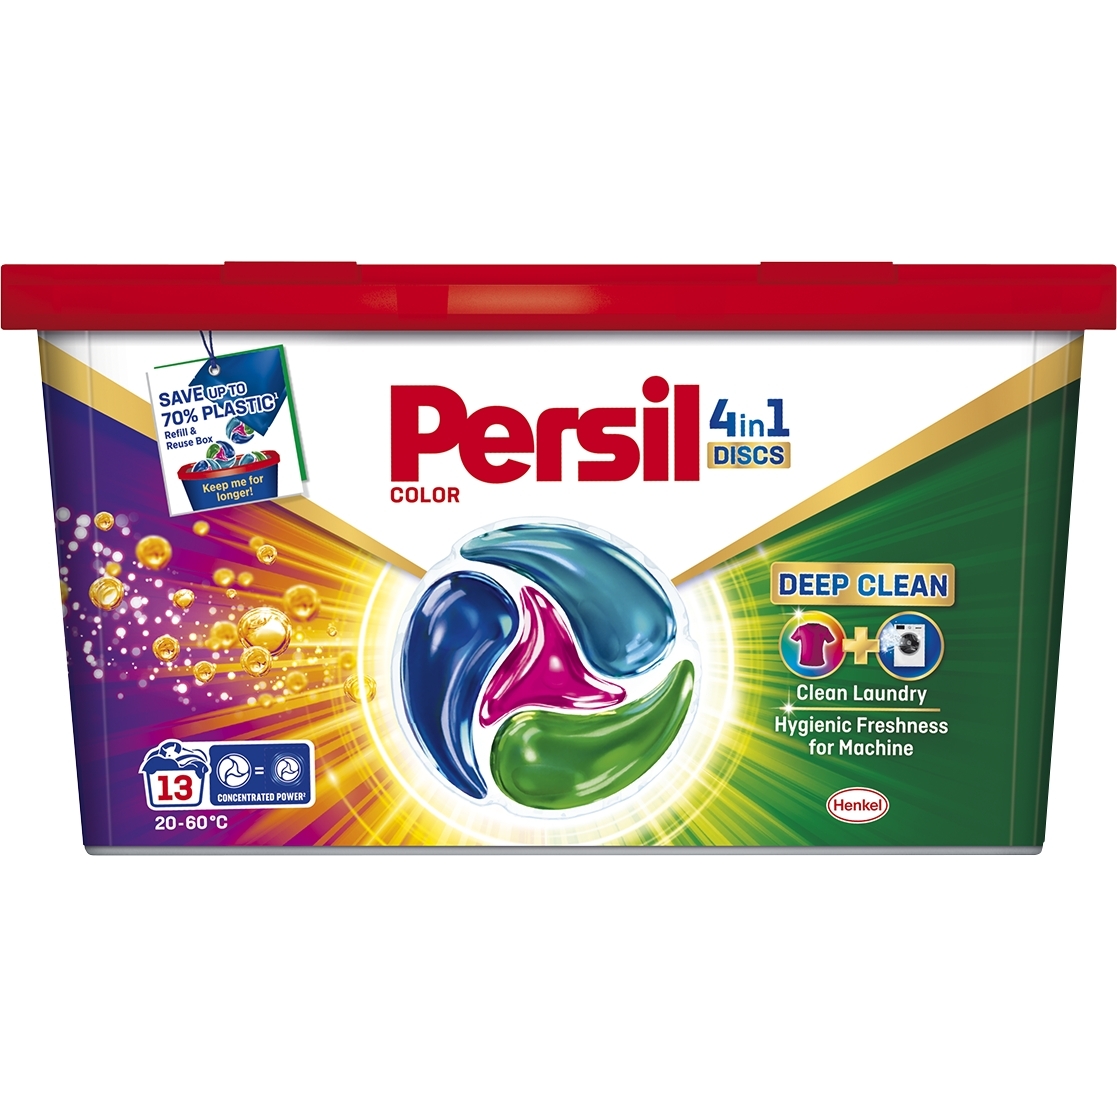 Капсули Persil Color 4in1 Discs Deep Clean 13 циклів прання - фото 1